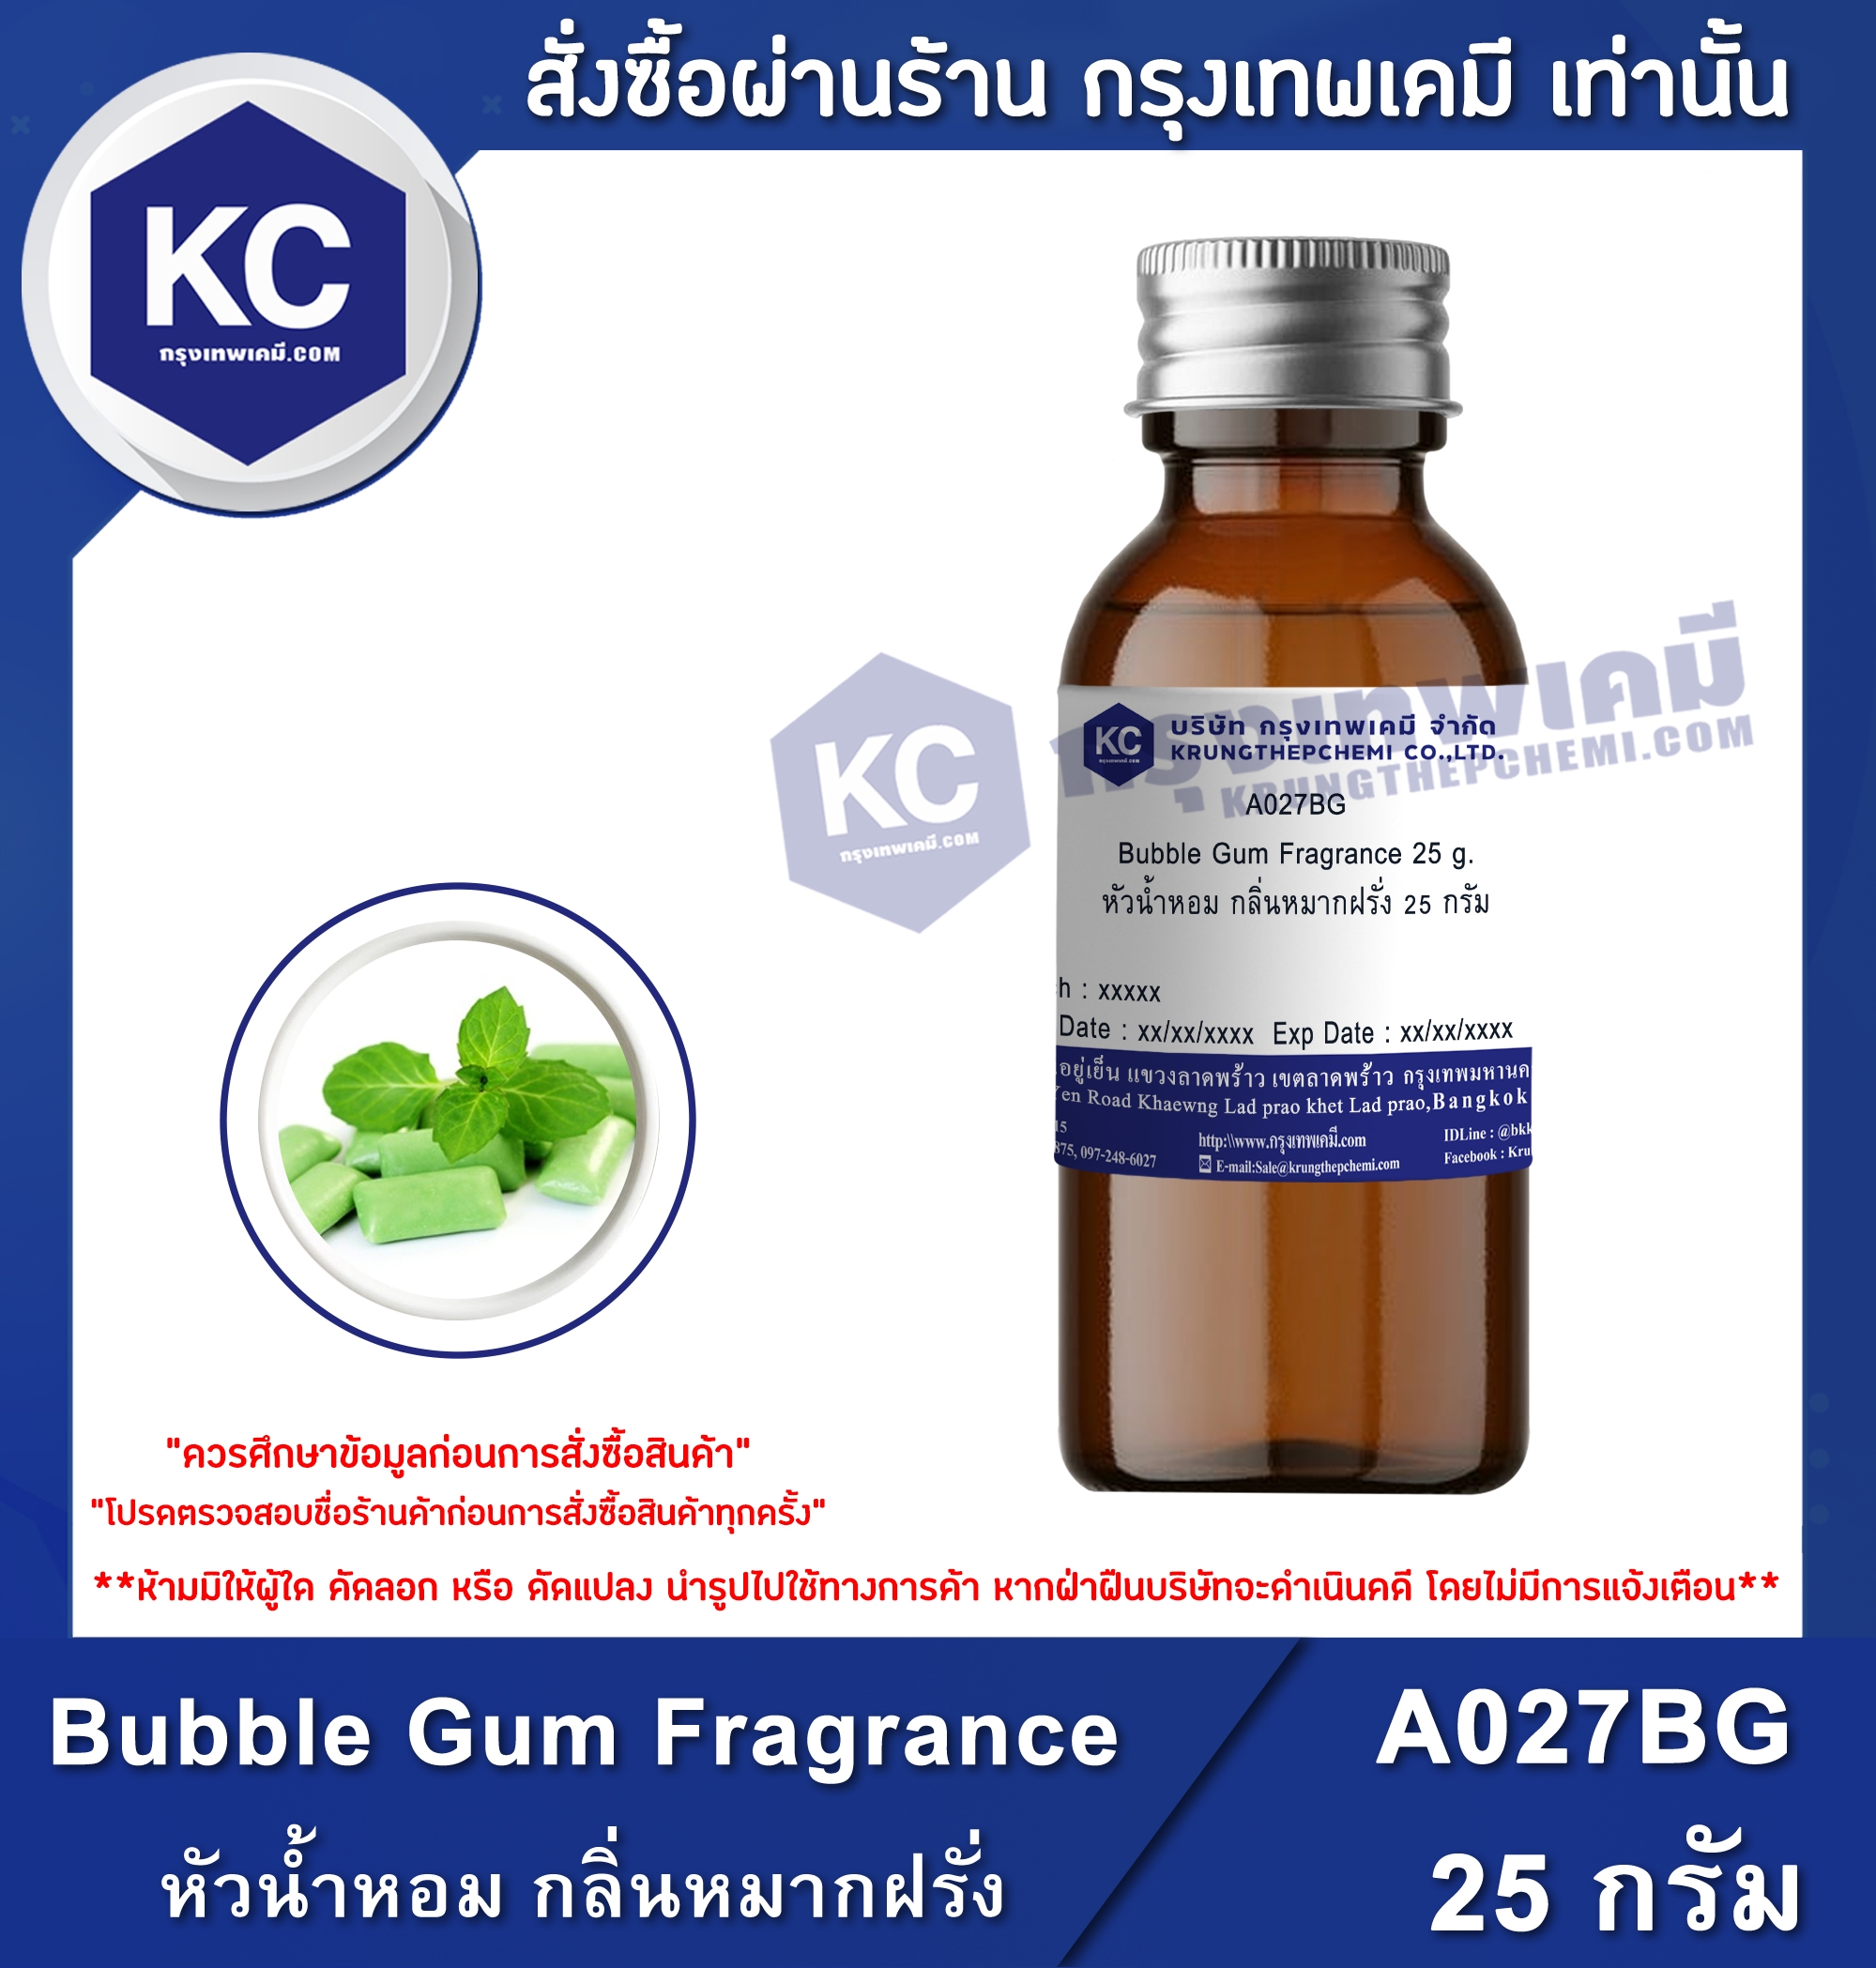 ราคา หัวน้ำหอม กลิ่นหมากฝรั่ง / Bubble Gum Fragrance (A027BG)